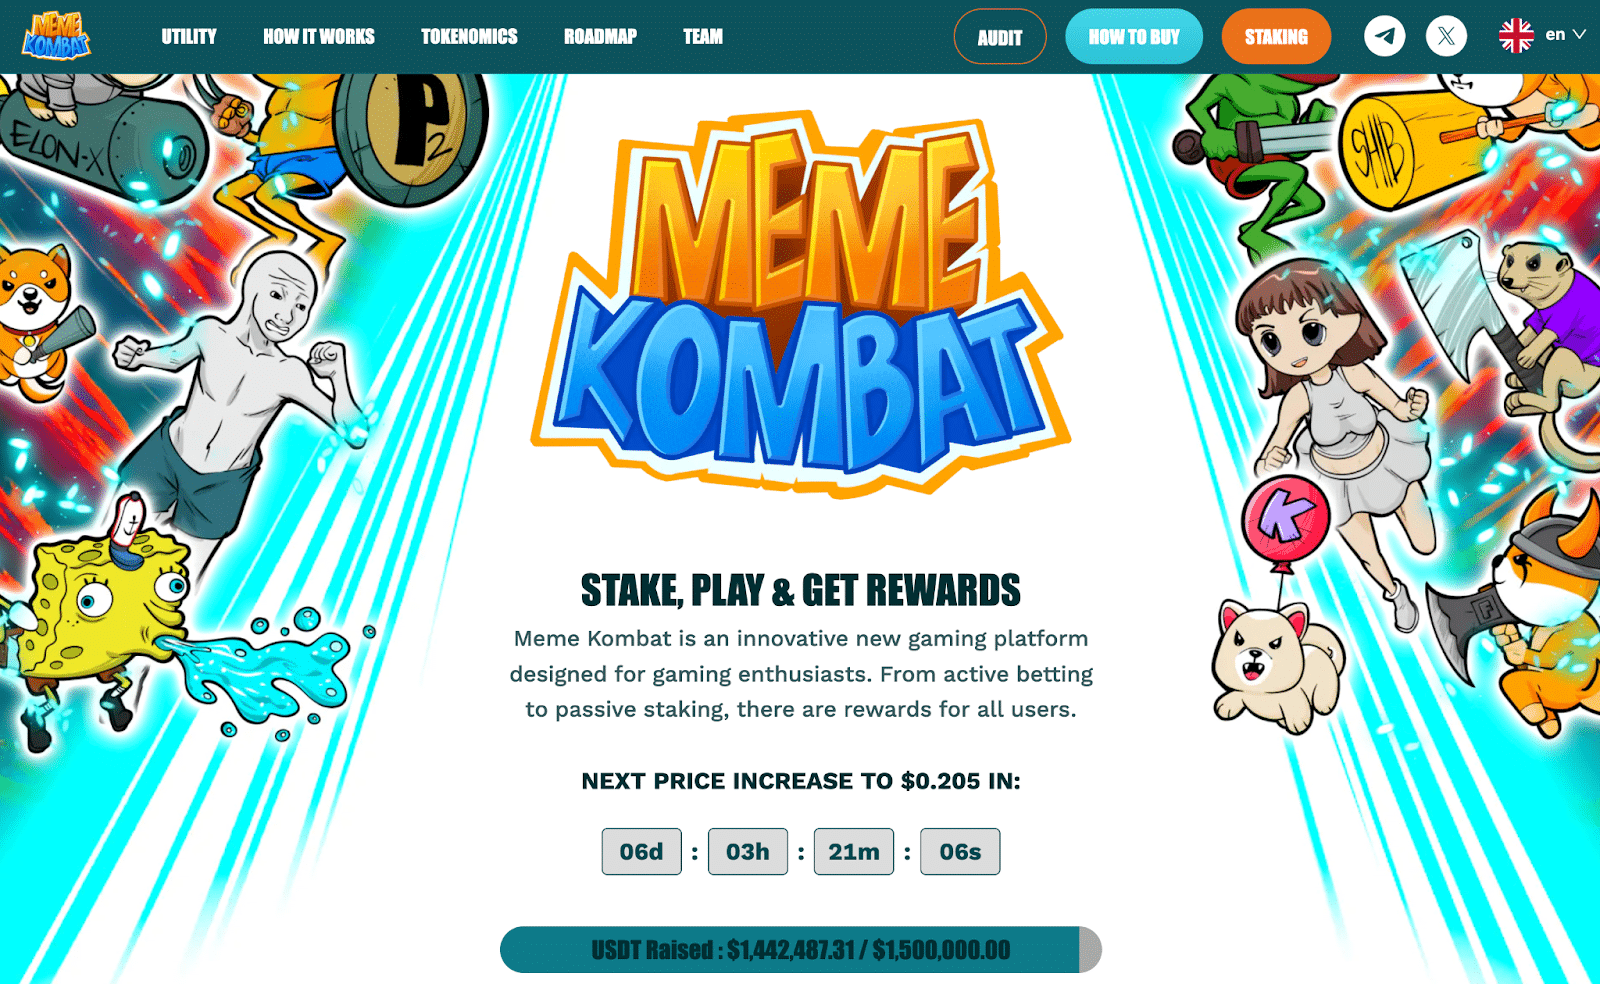 黄金甲体育平台app下载Pepe币价格上涨25%　Meme Kombat为独特游戏平台筹集近150万美元　或将迎来100倍增长